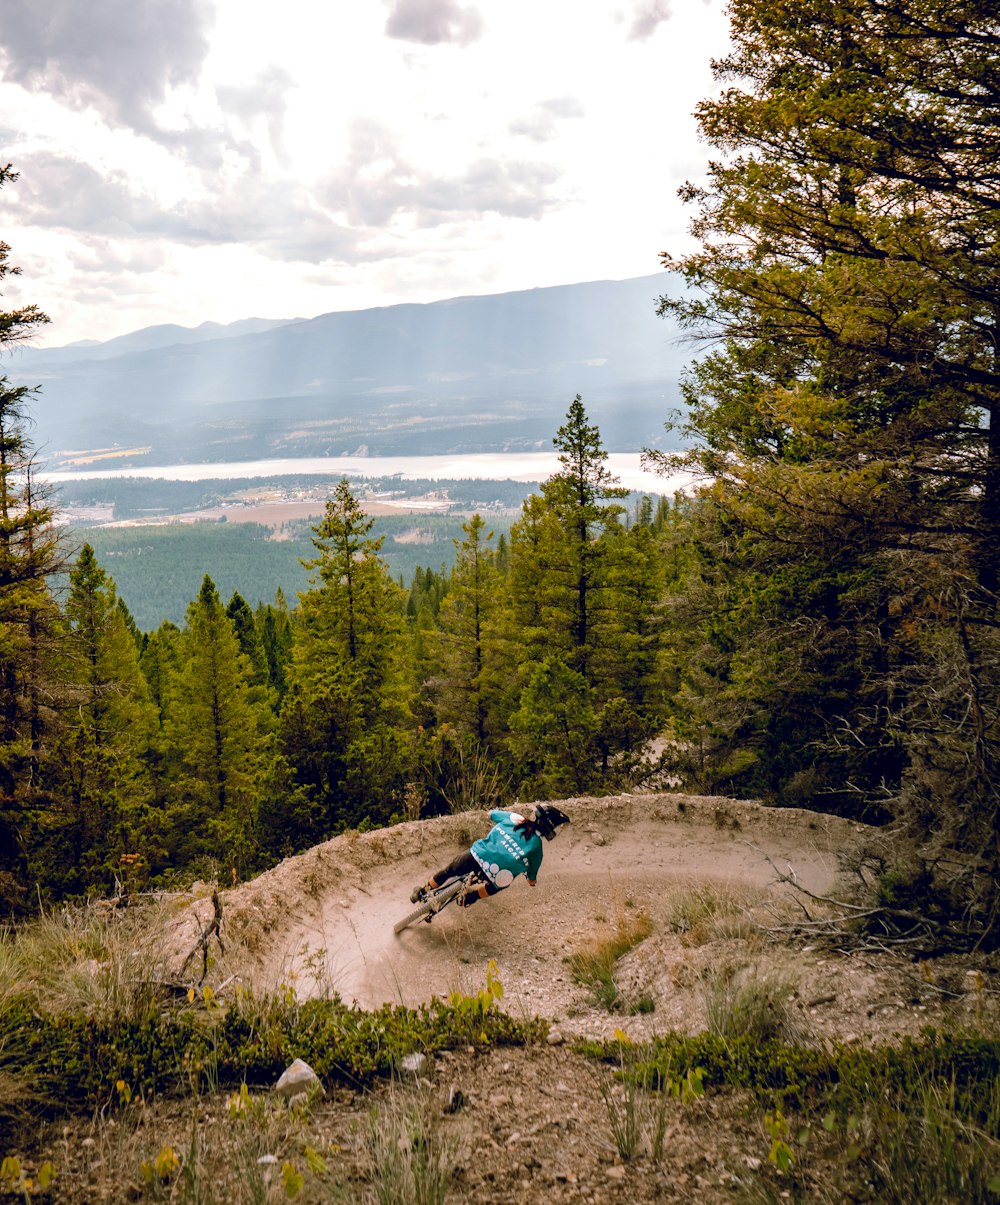 a person riding a mountain bike on a trail